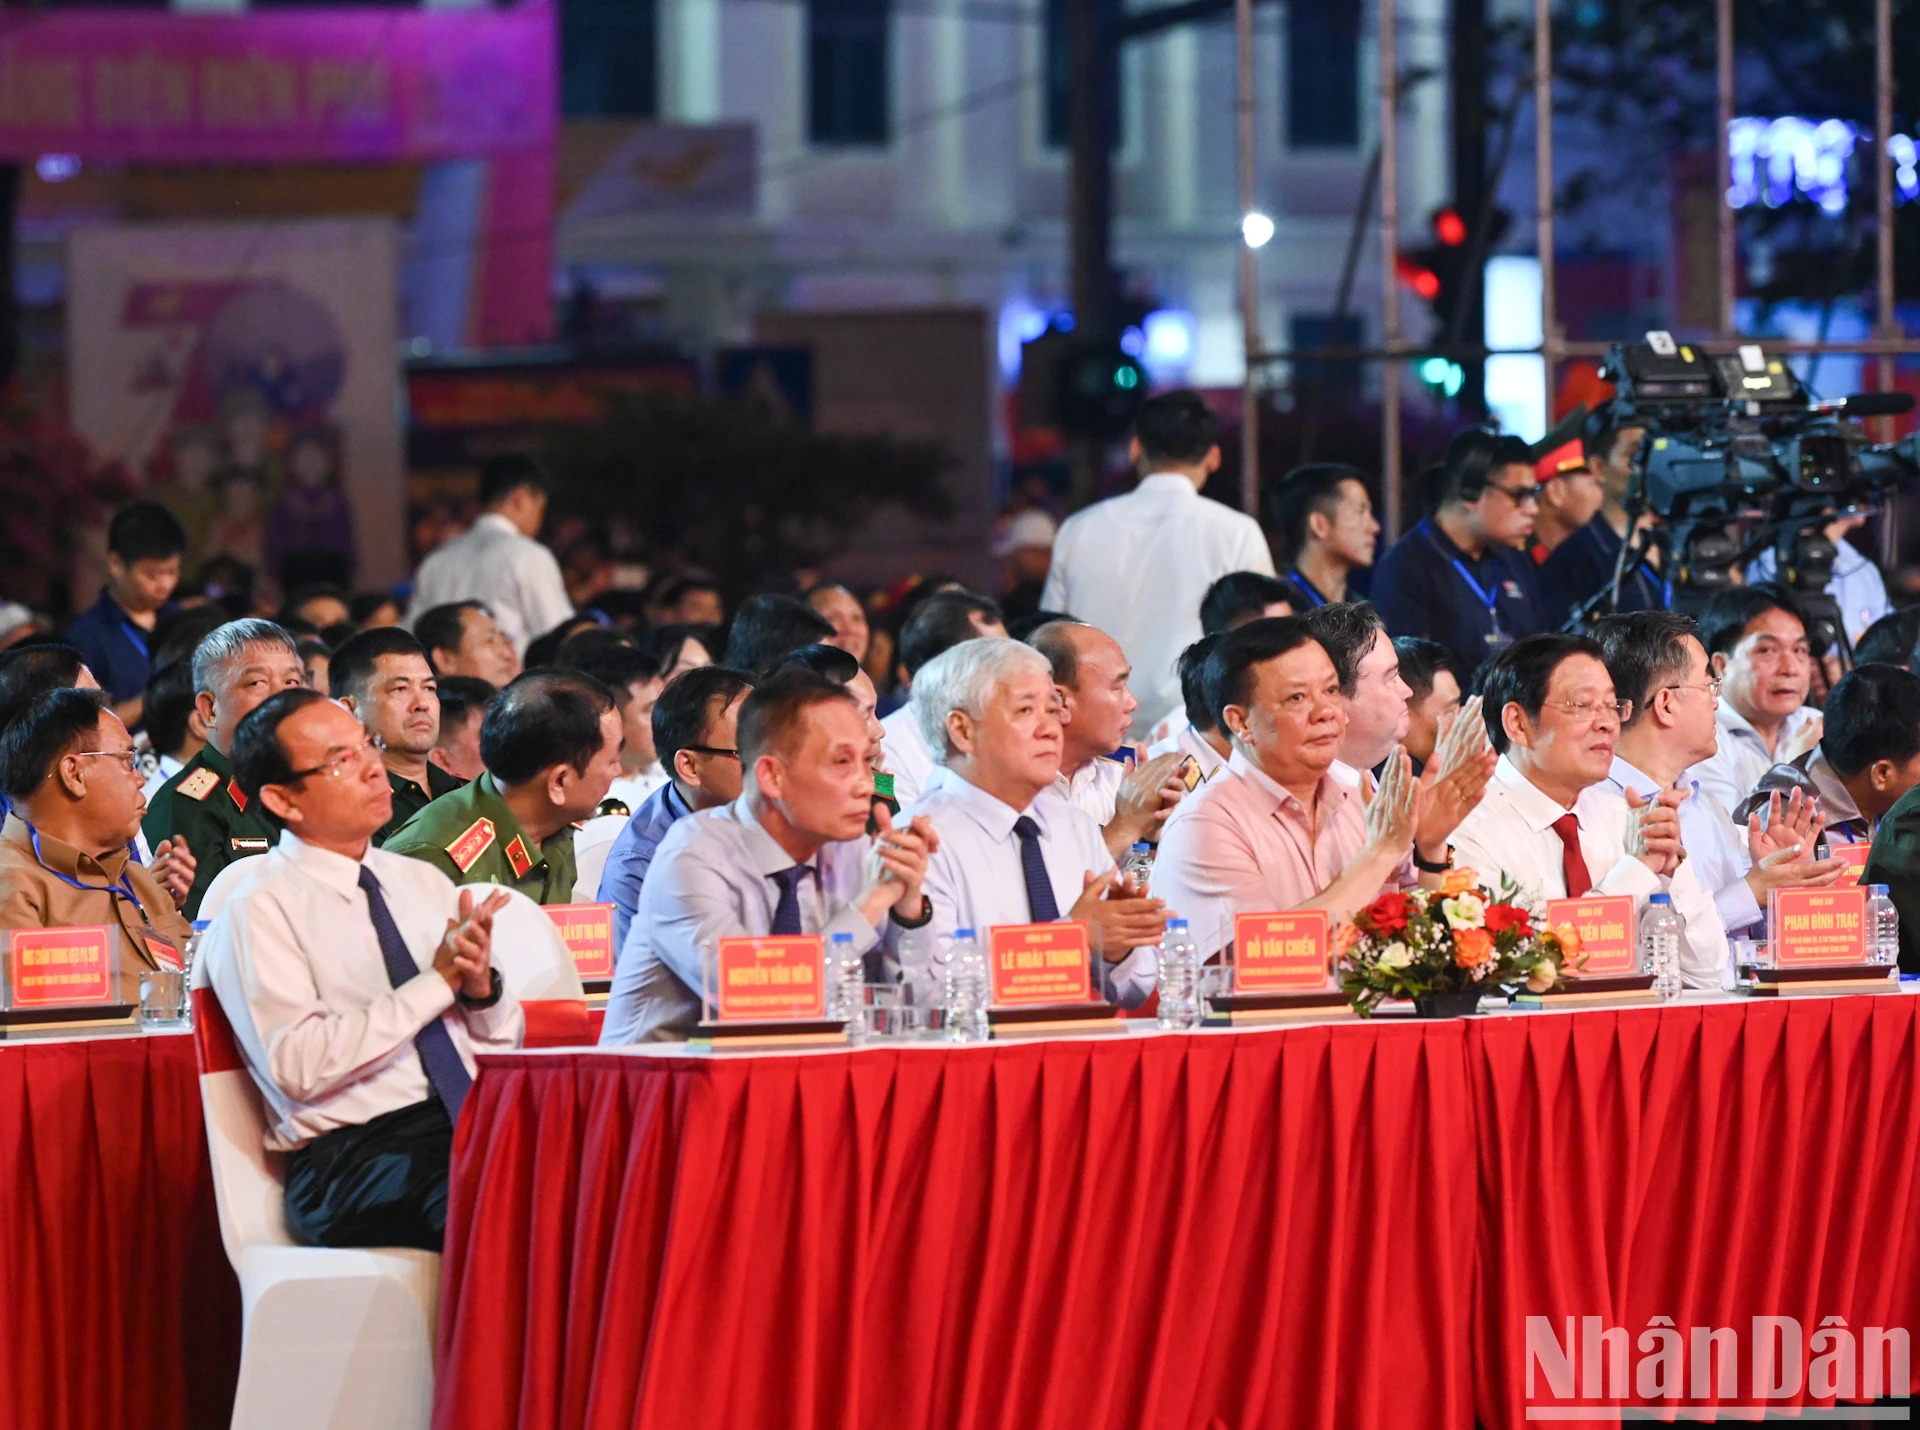 Các đồng chí lãnh đạo Đảng, Nhà nước tham dự chương trình.

